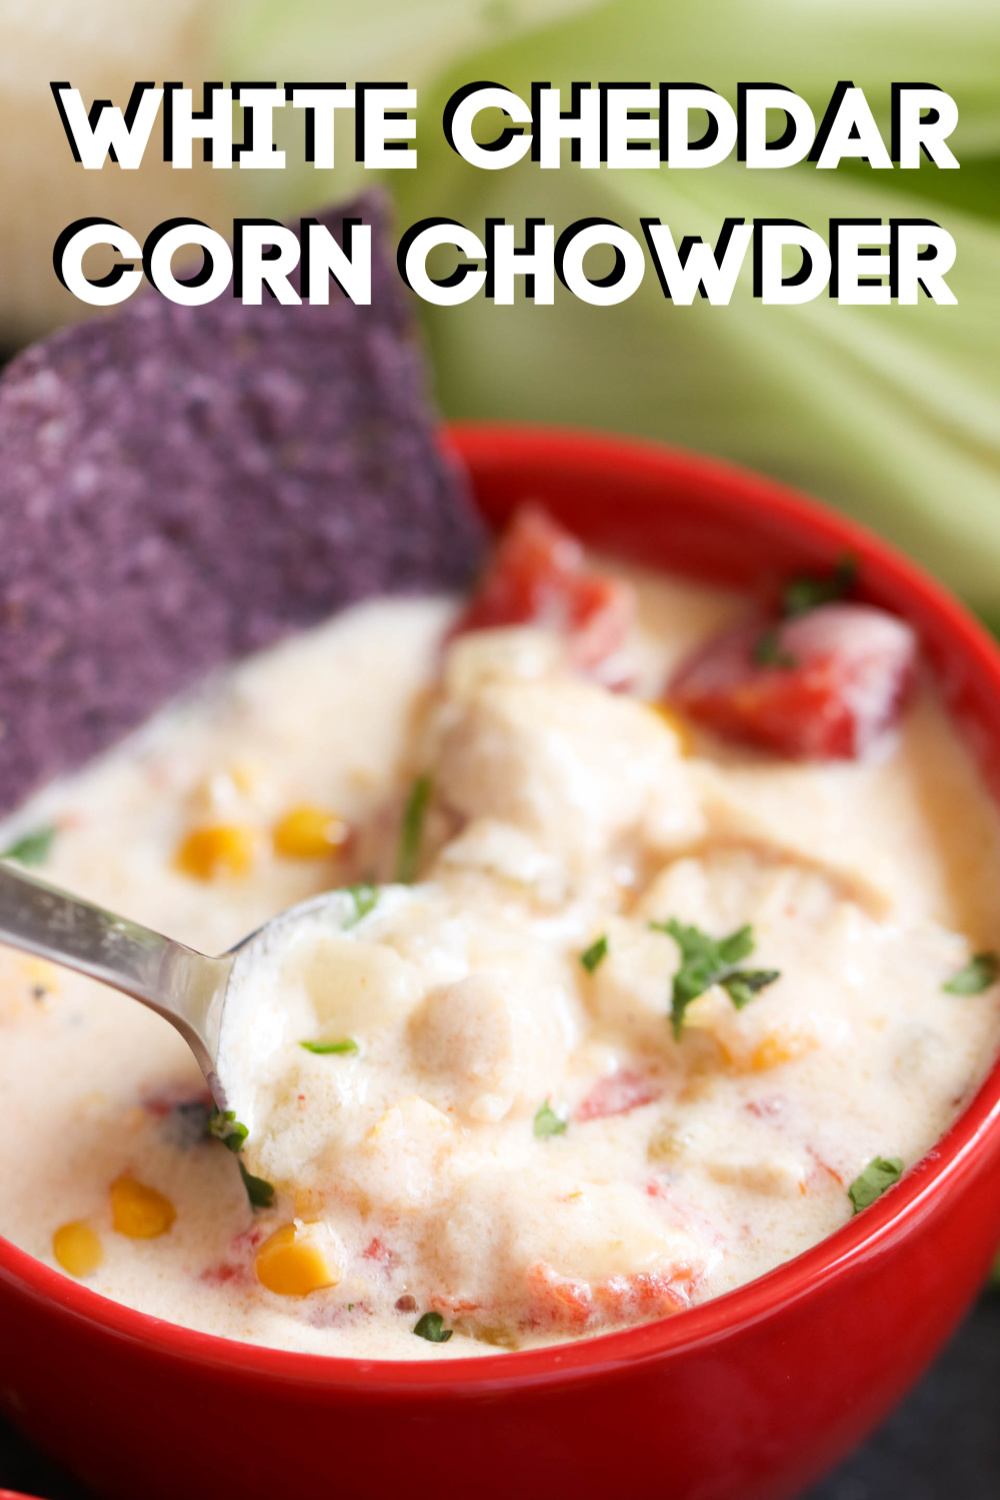 White Cheddar Corn Chowder in a bowl